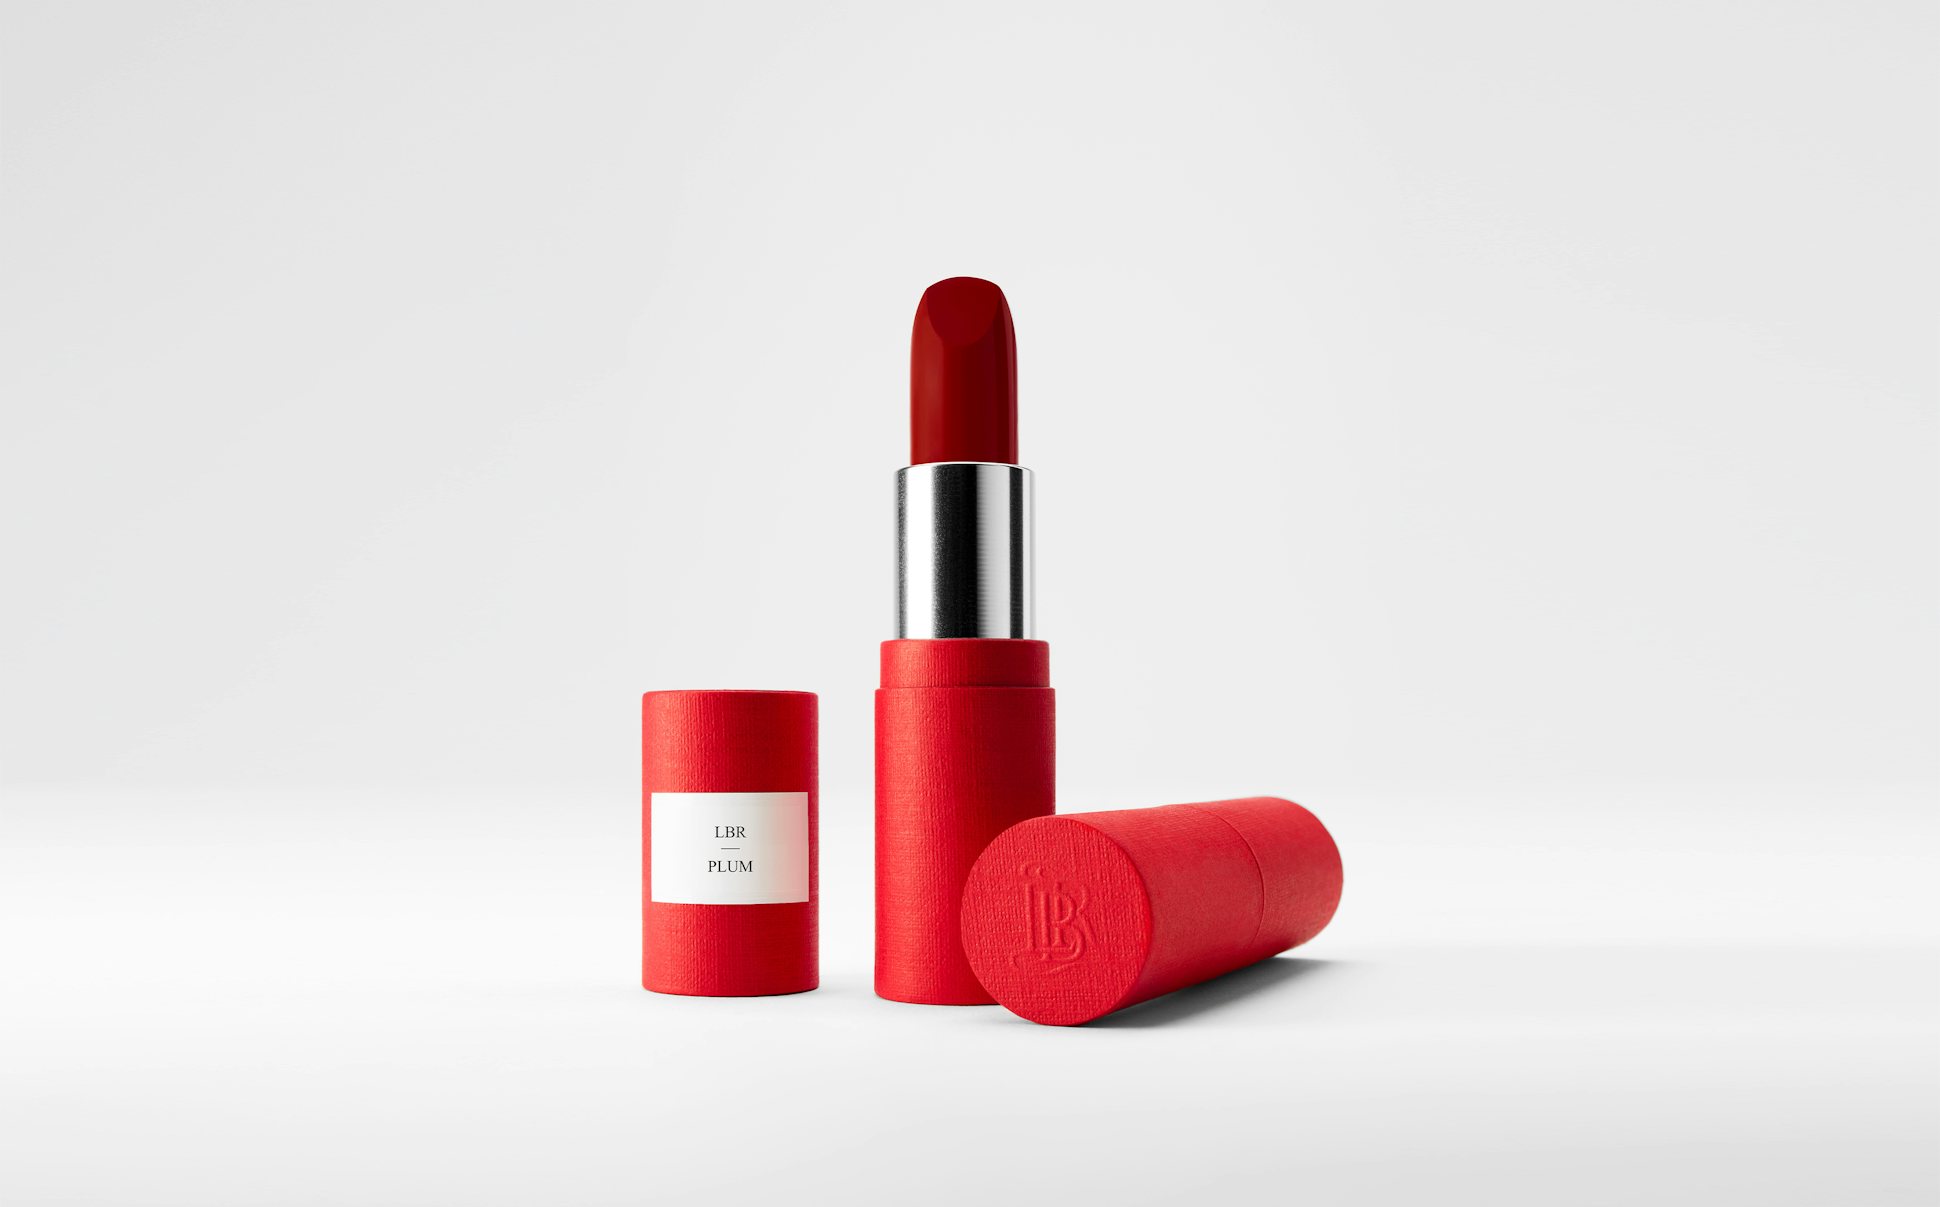 La bouche rouge Plum lipstick in the red paper case